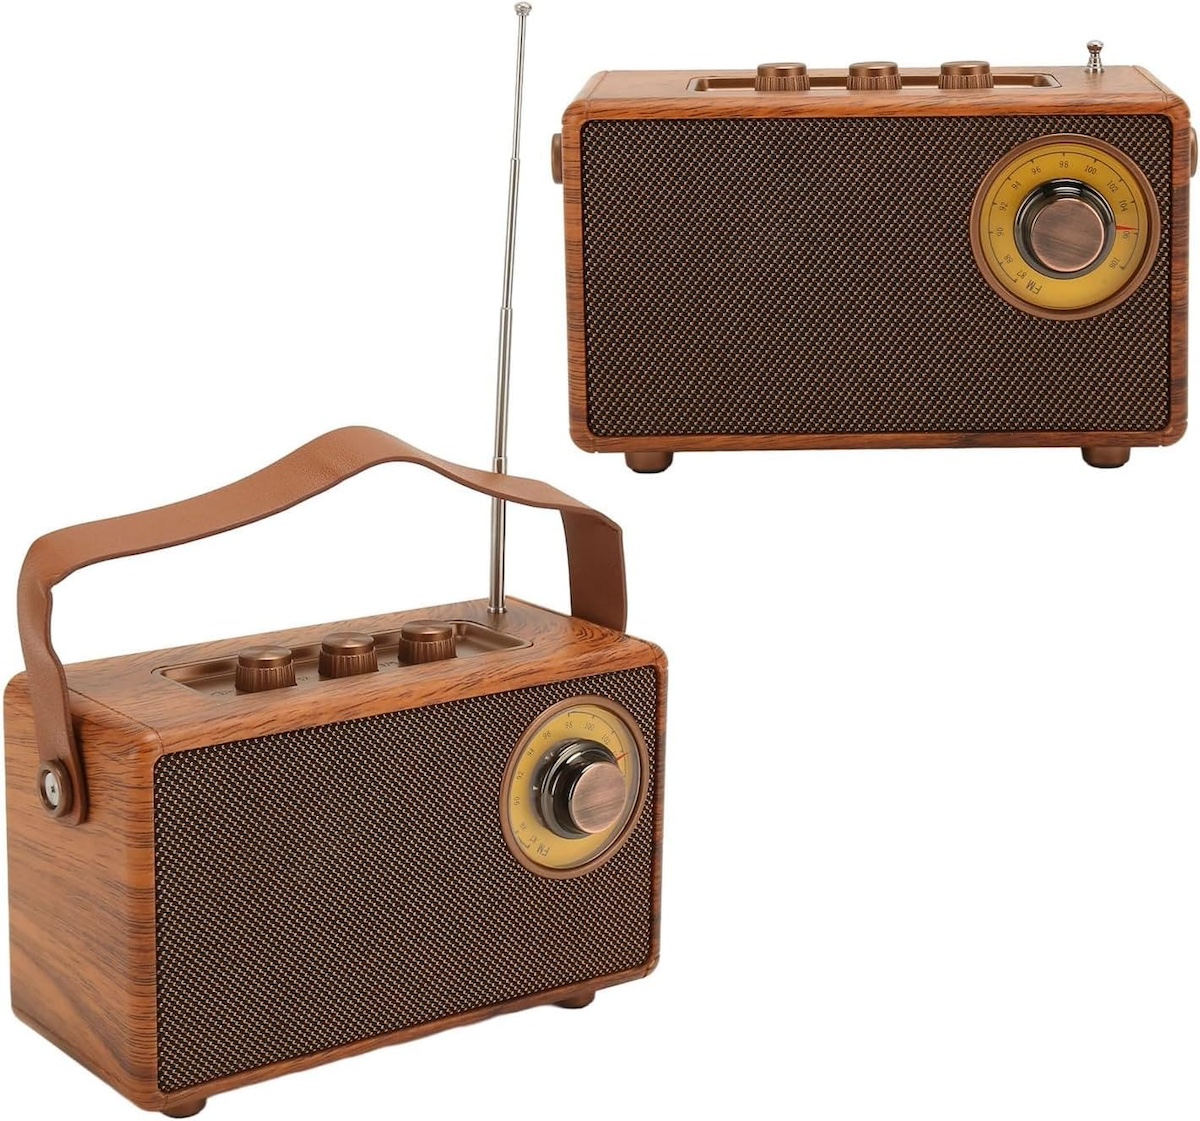 radio mini kleine retro vintage houten stijl